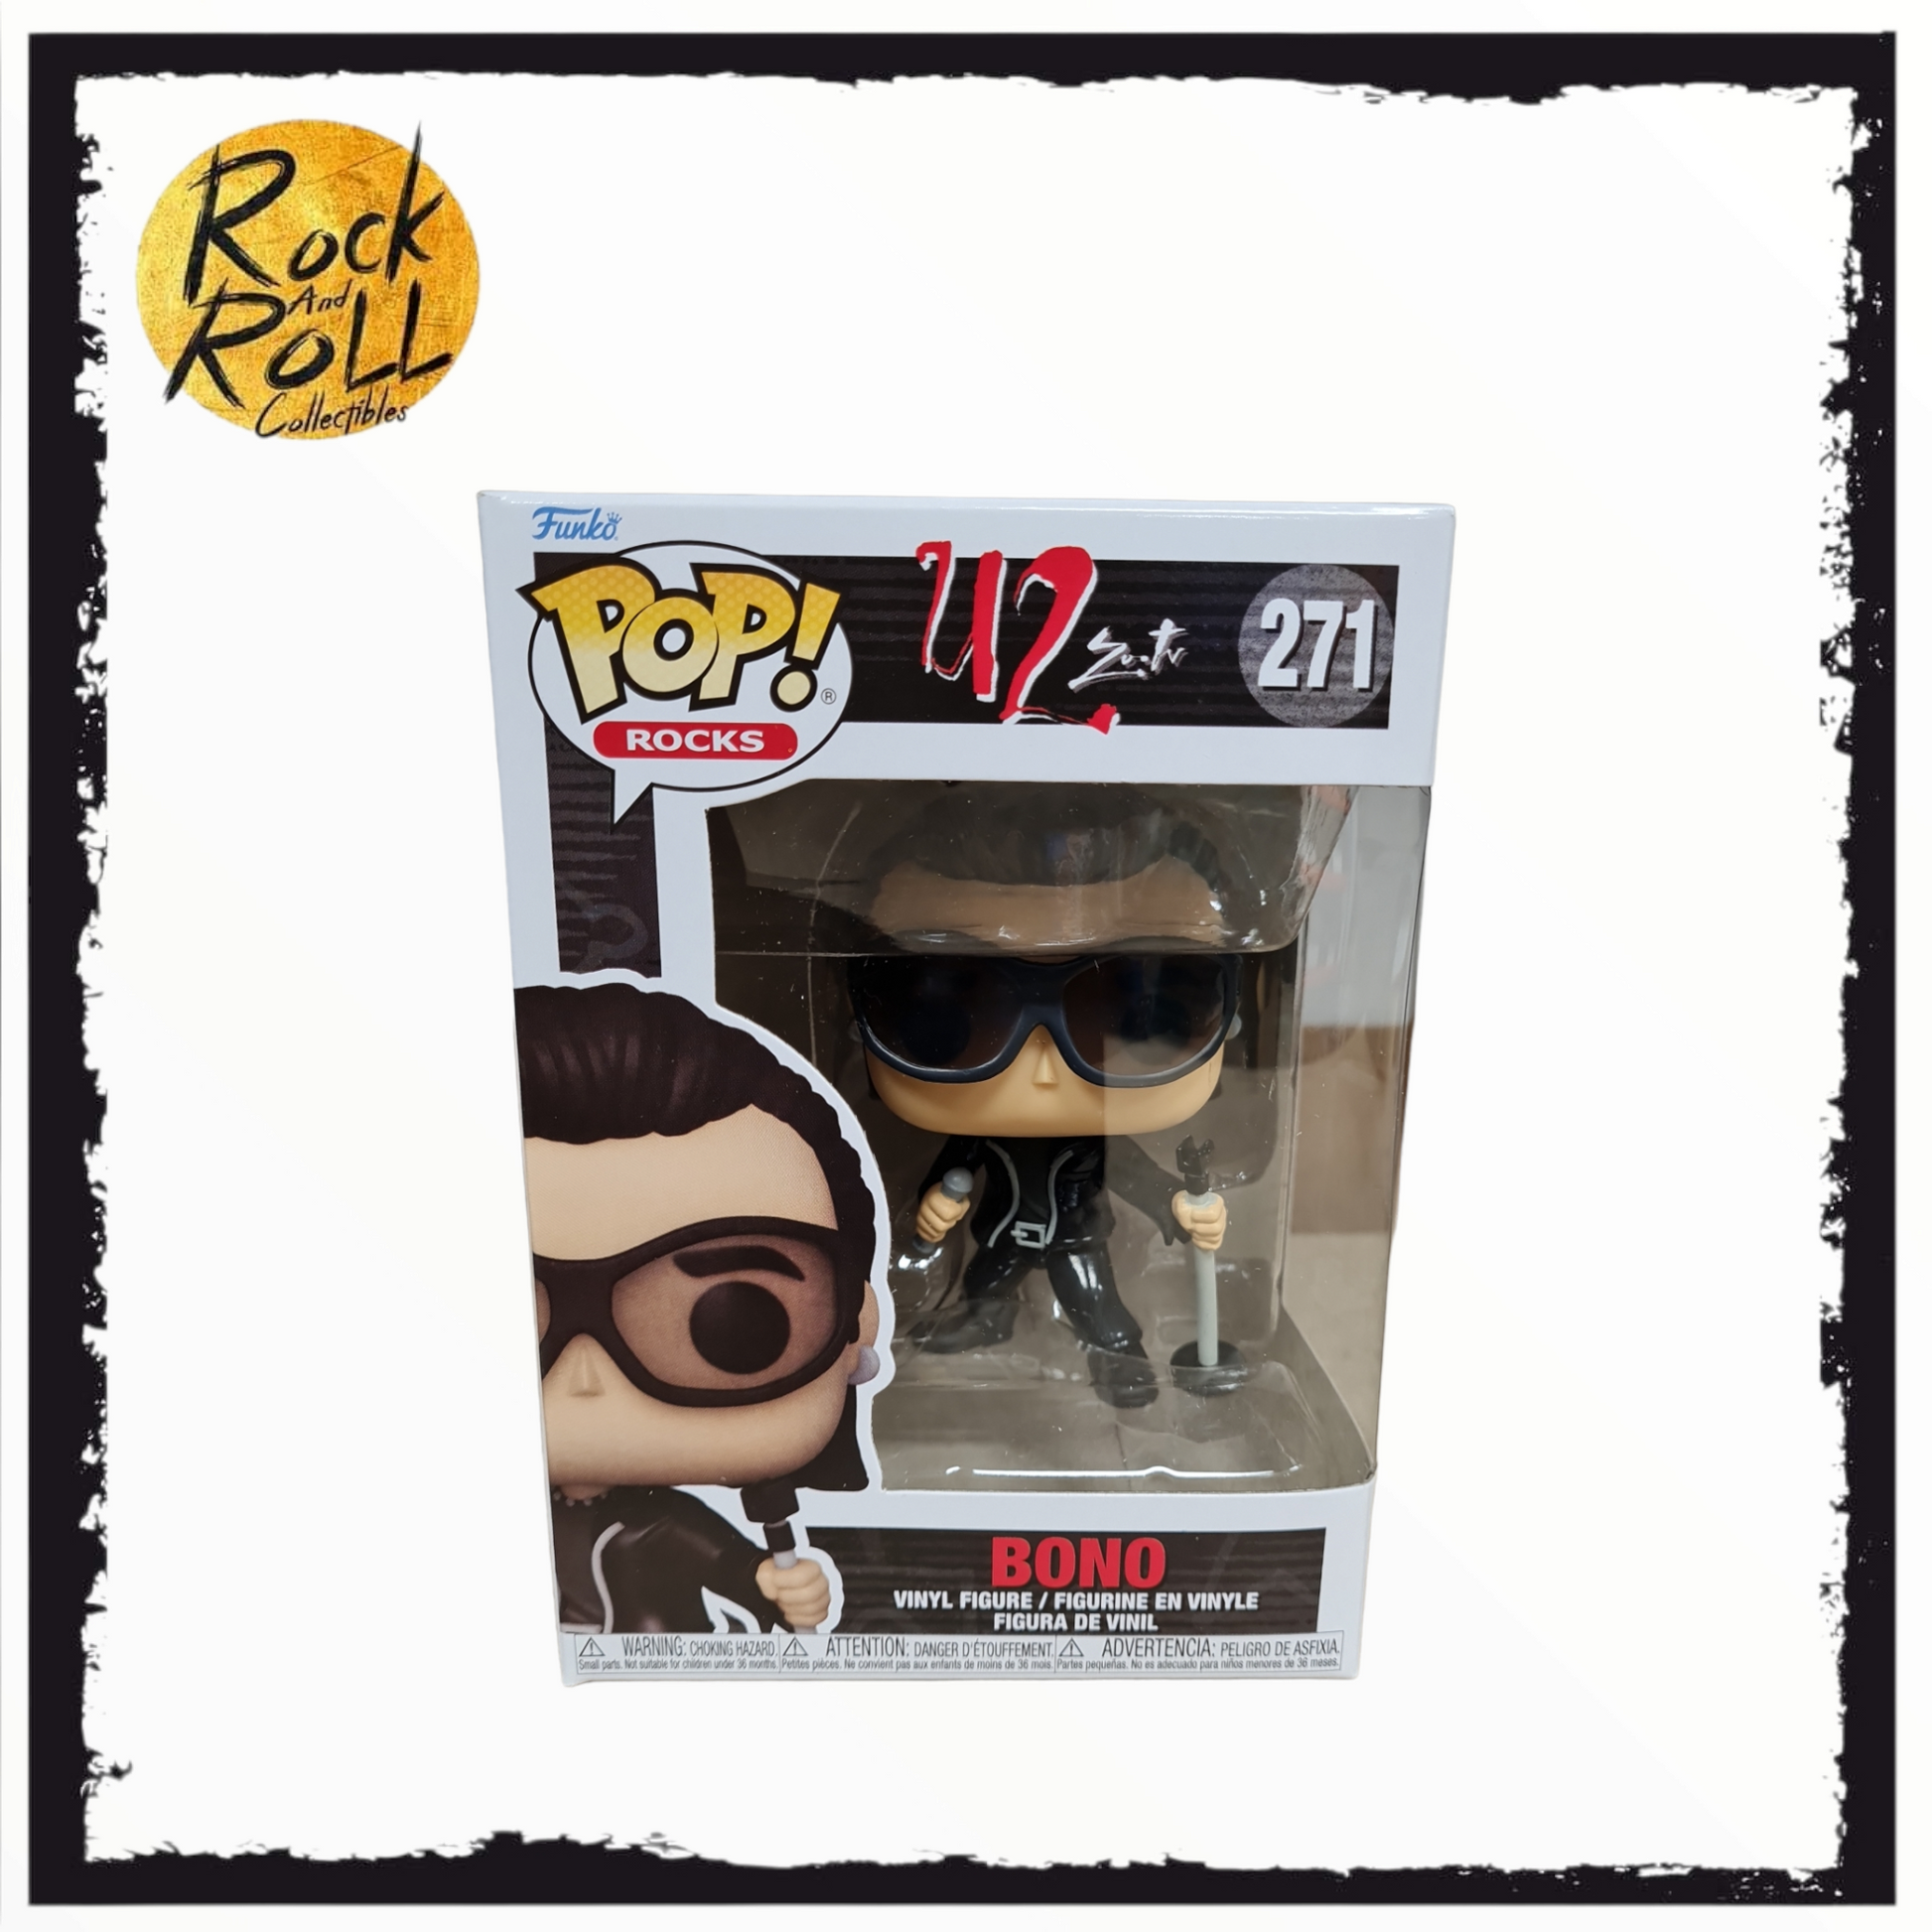 Funko Pop! Rocks: U2 - Zoo TV - 4pk Vinyl Figure (Walmart Exclusive)